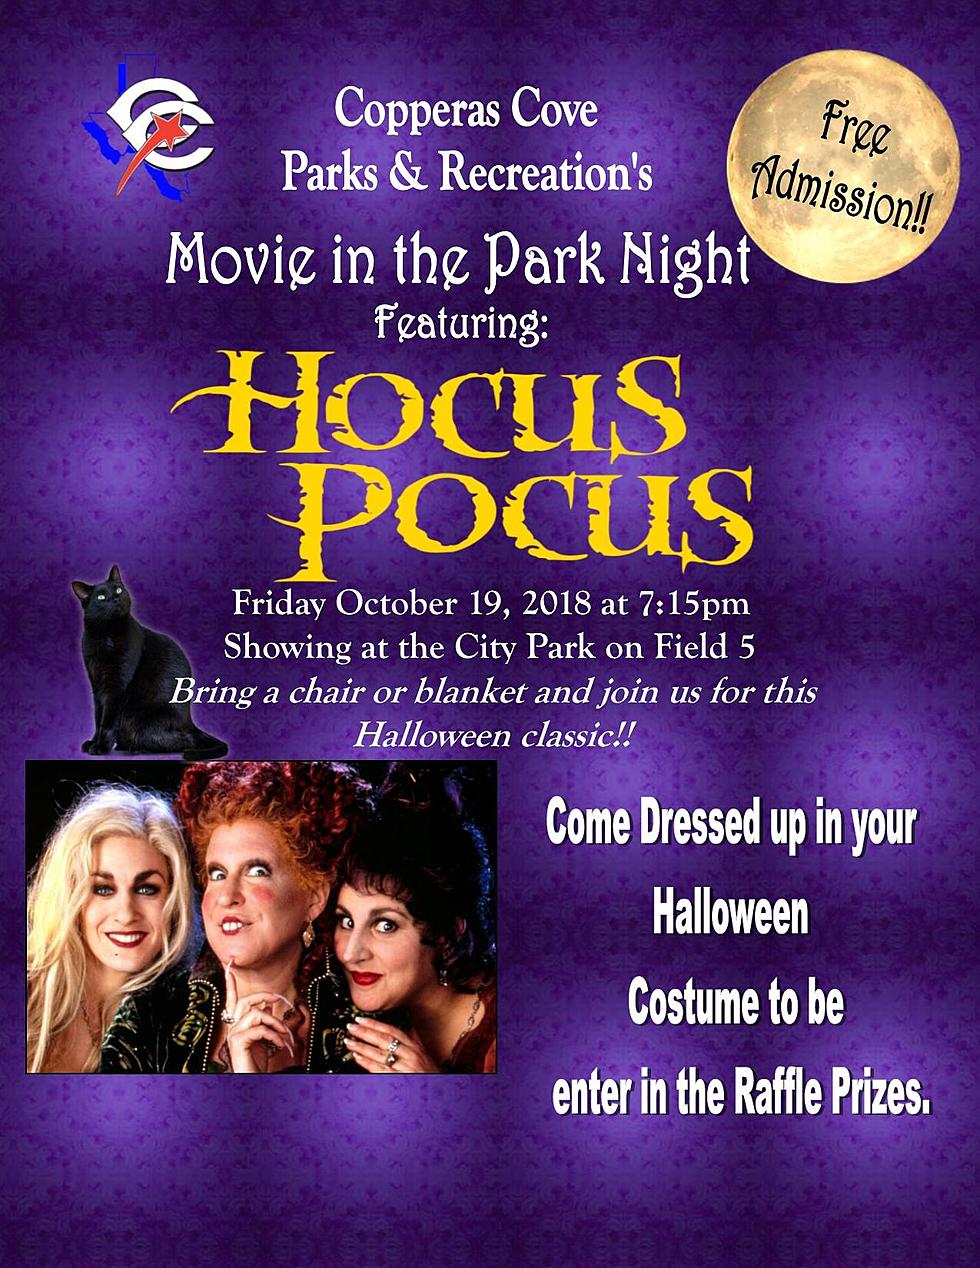 Copperas Cove Free Halloween Movie In The Park: Hocus Pocus